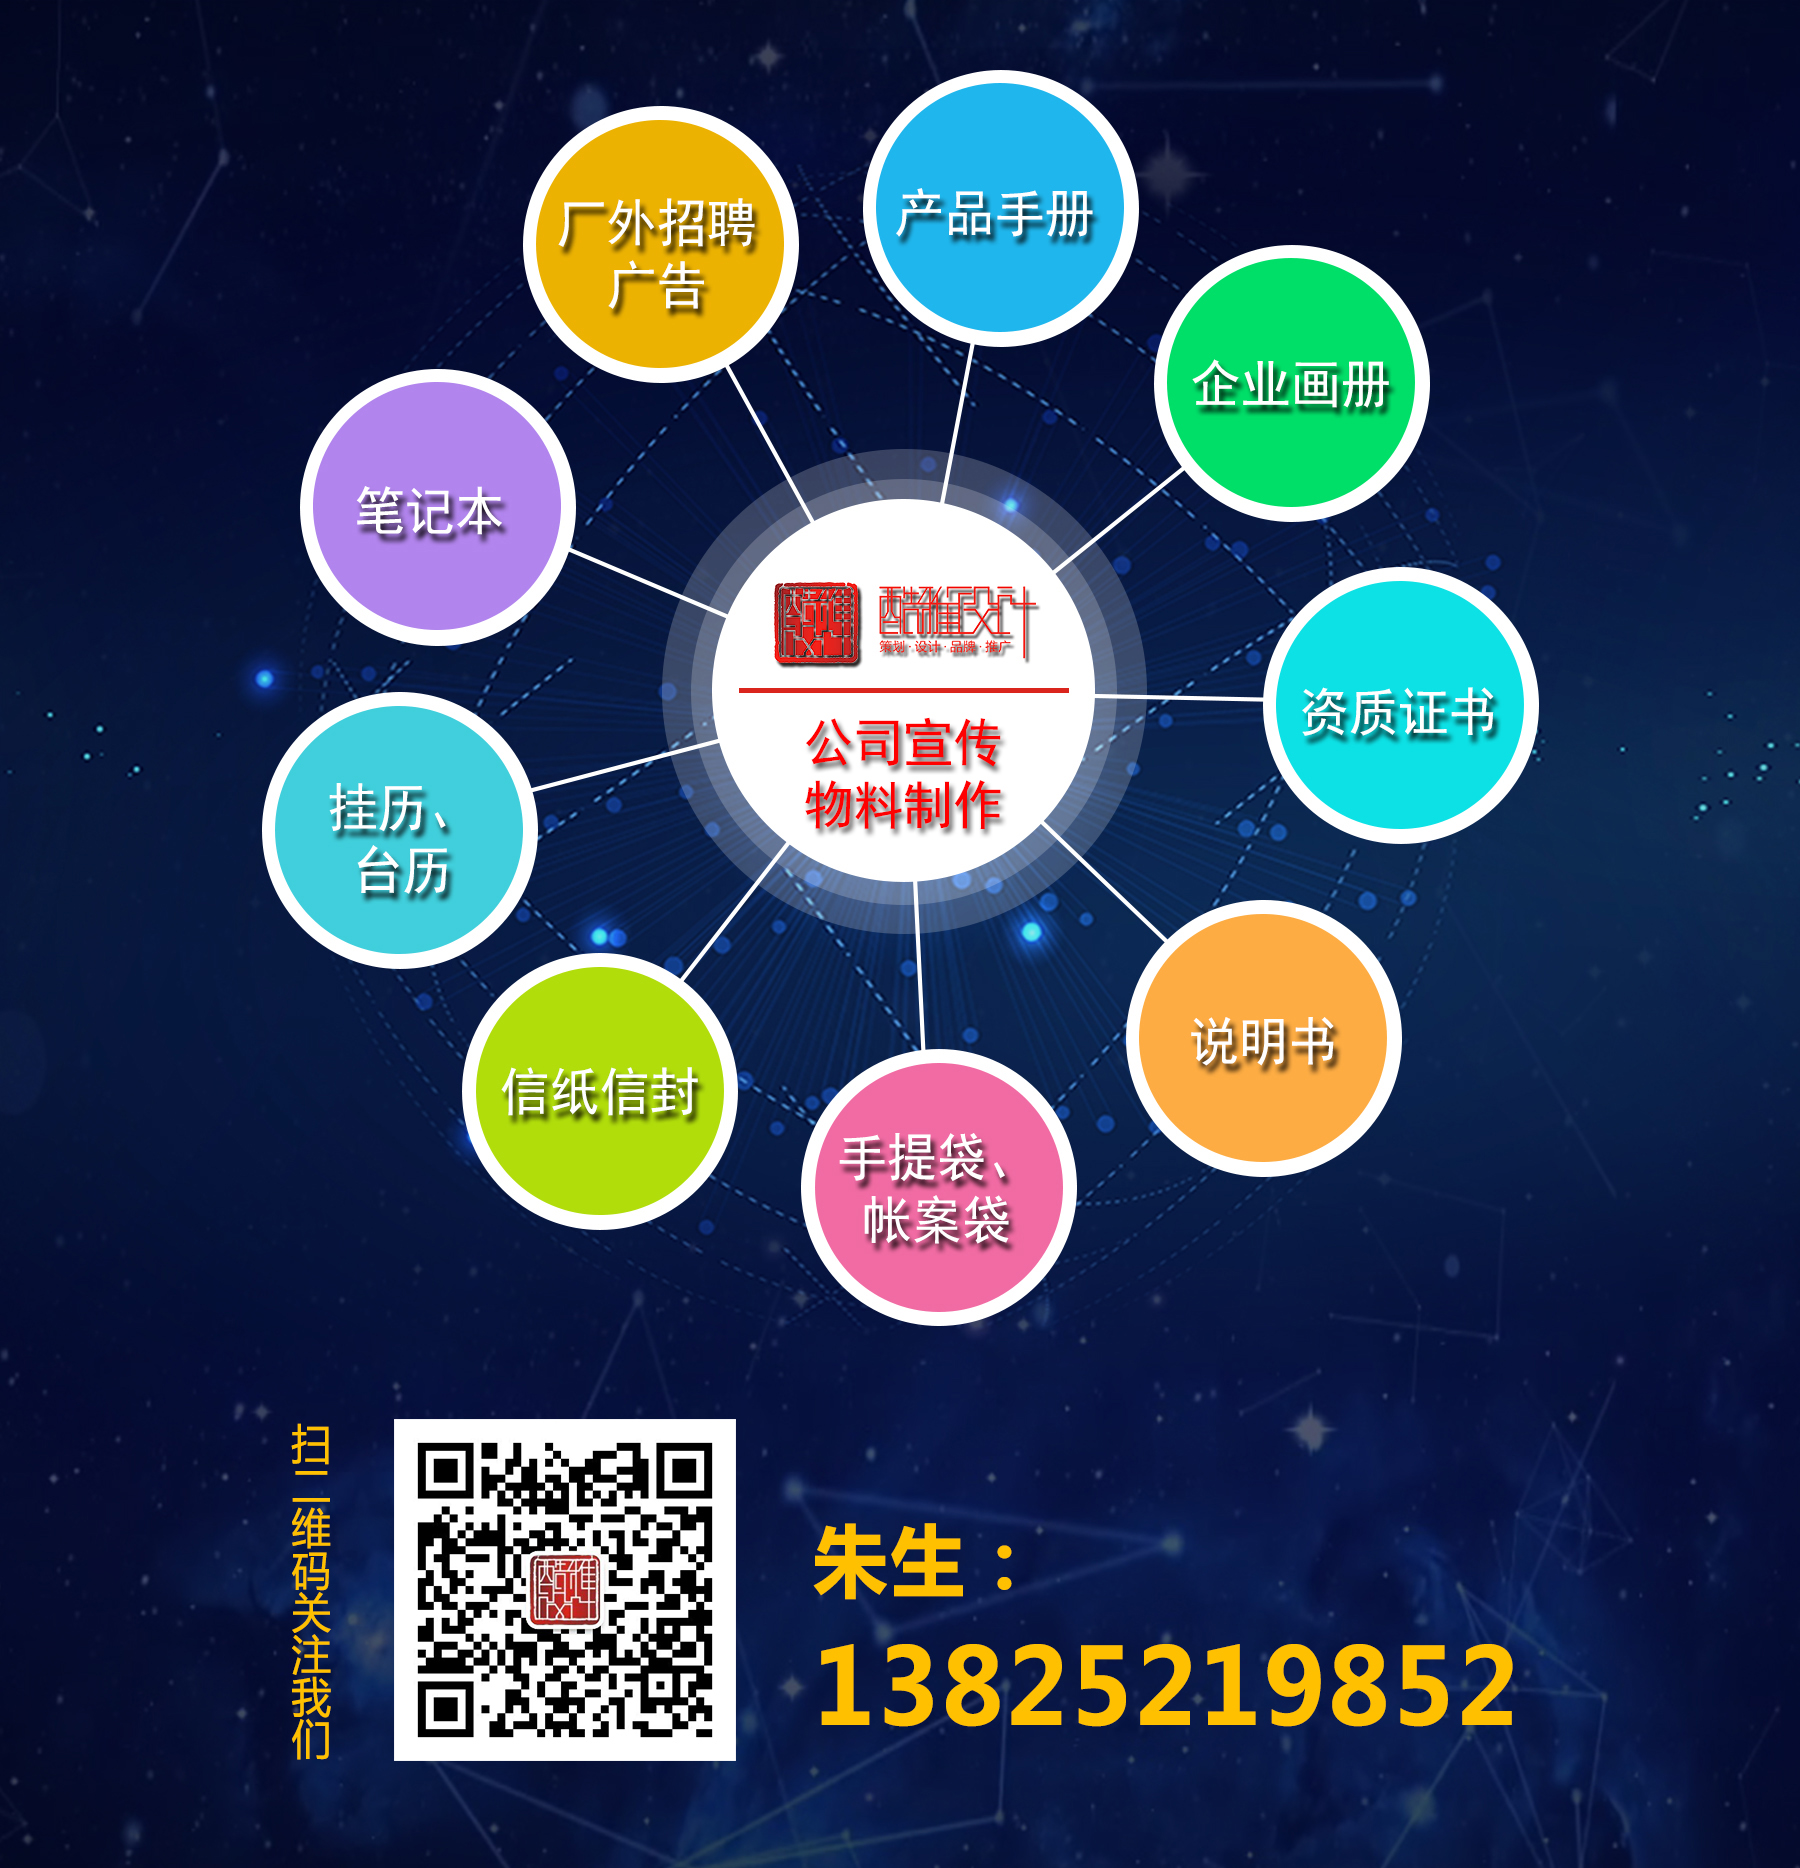 凯时网站·(中国)集团(欢迎您)_image4841